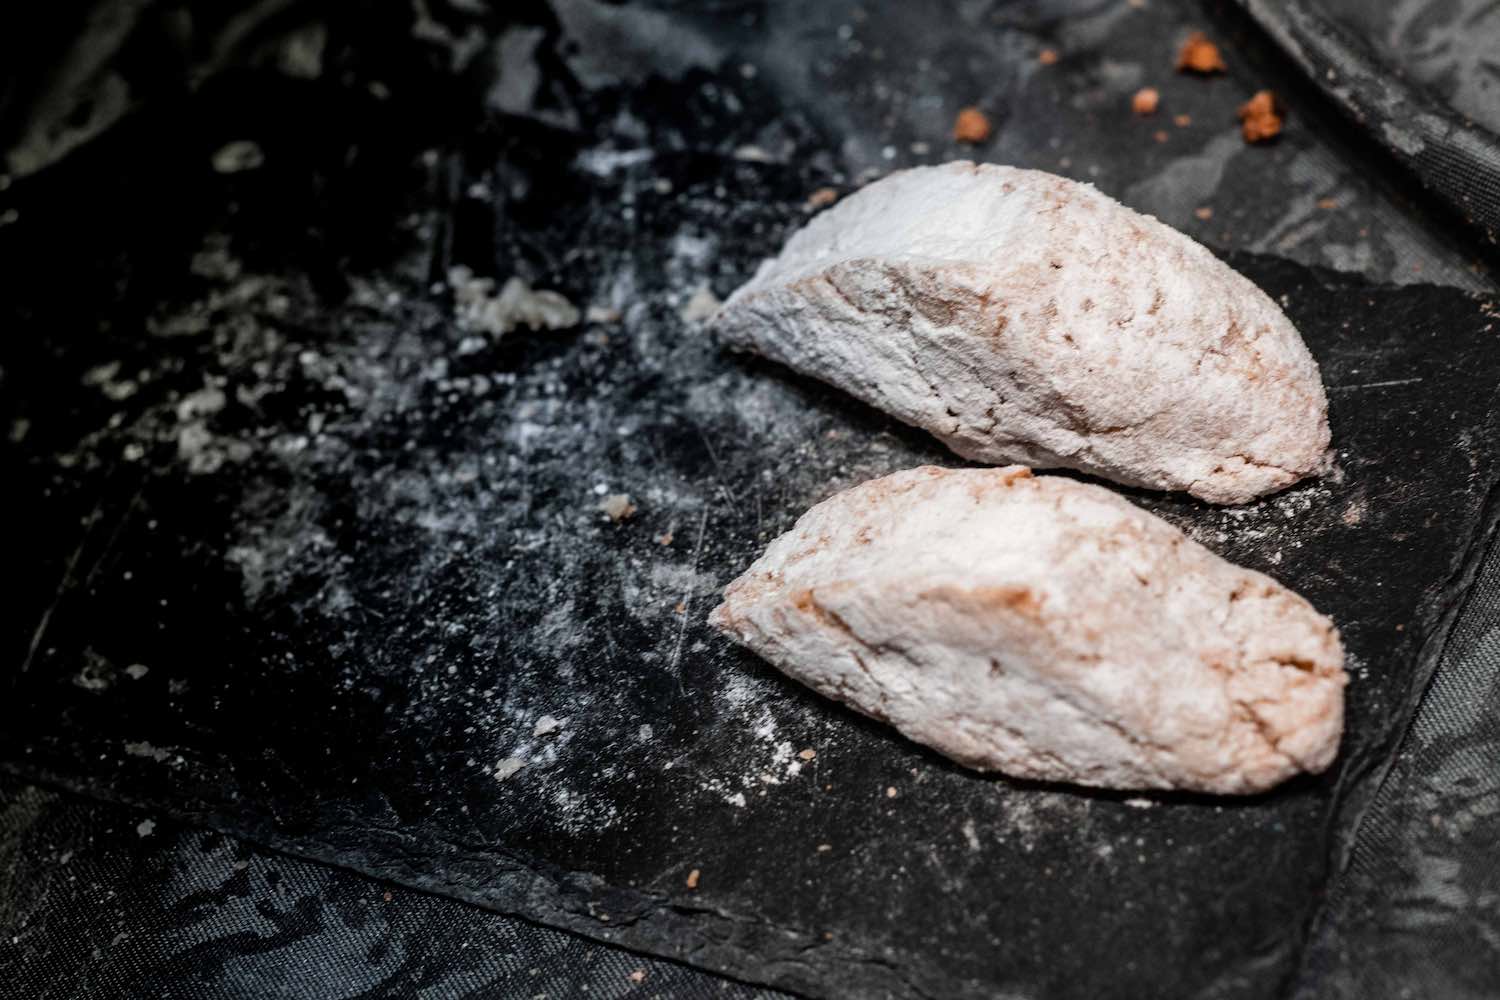 Viaggio nel girone dei golosi al Pitti Taste 2019 alla scoperta dei dolci toscani: buccellato, cantucci, copate e pan di vendemmia.